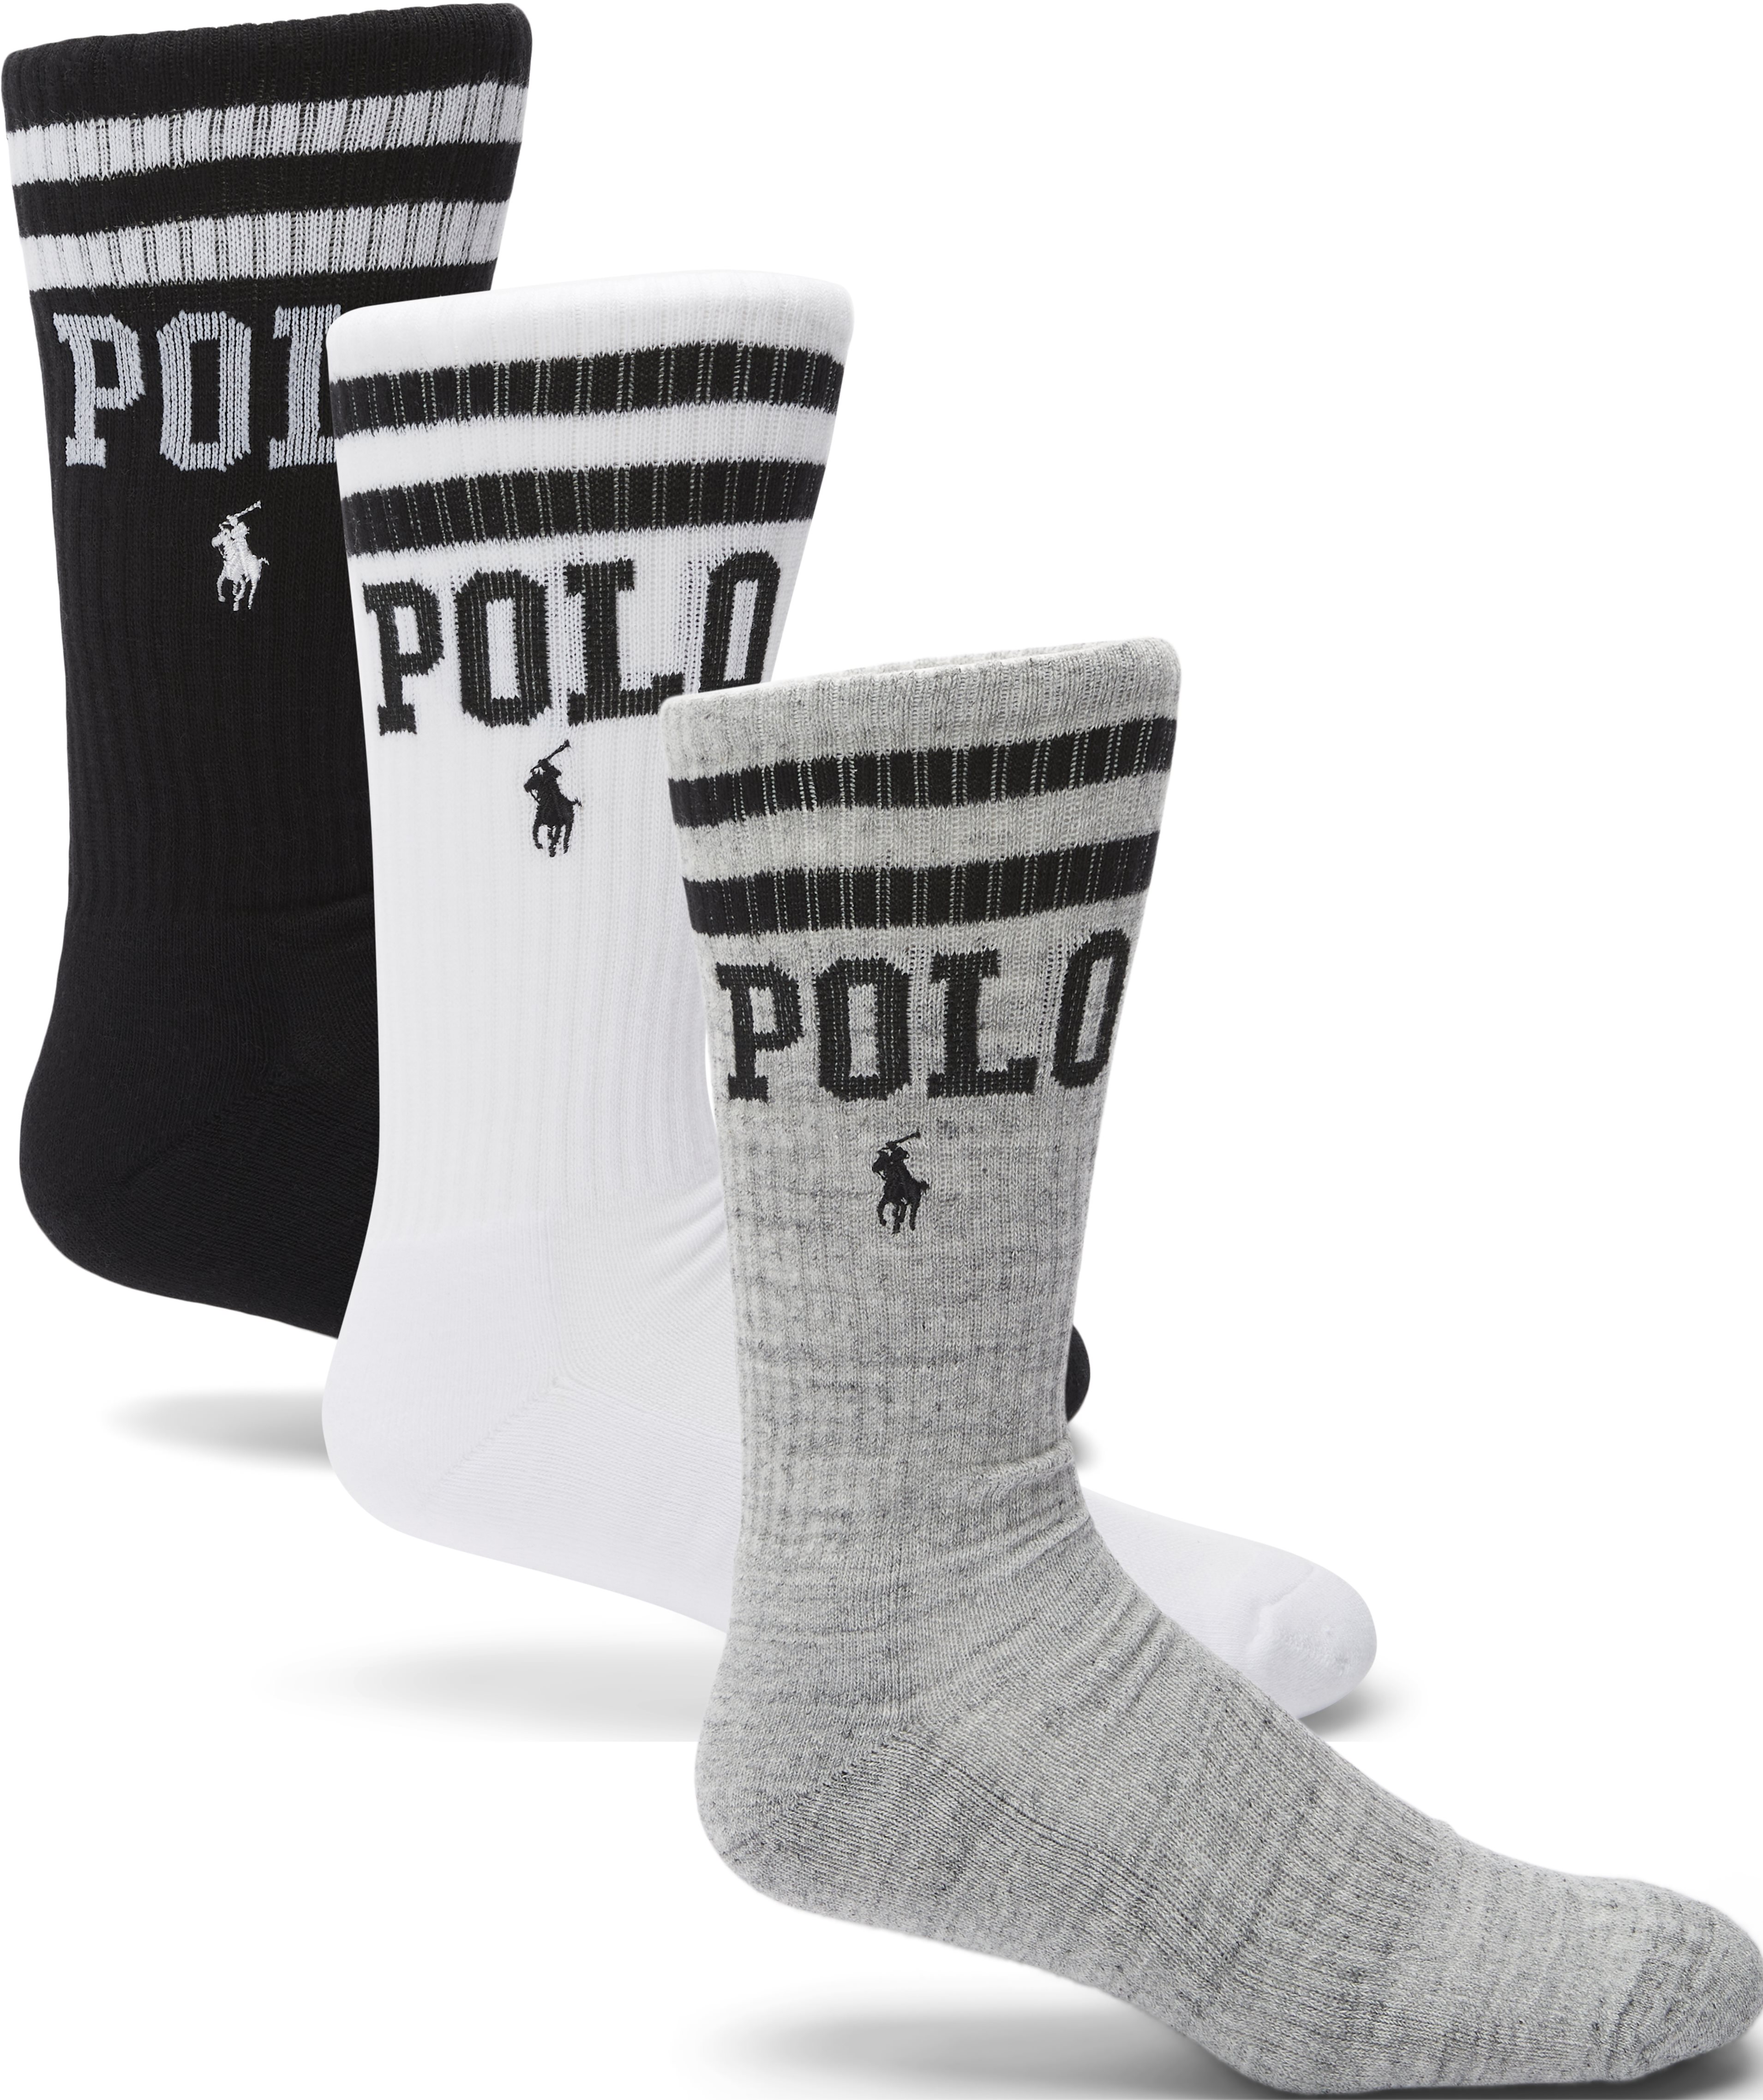 449799768 tennis socks - Socks - Multi